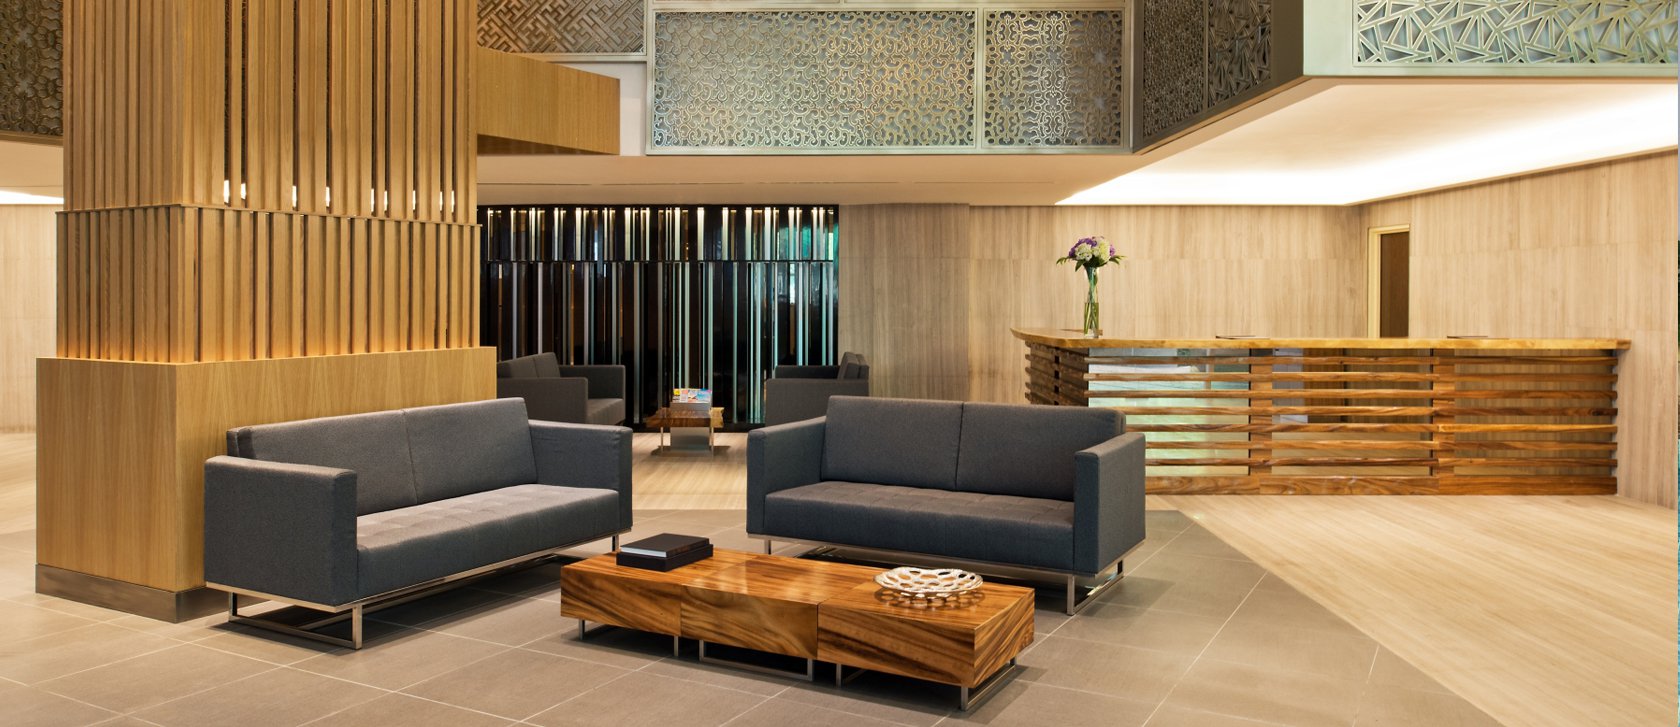 Oasia-Suites-Kuala-Lumpur-Lobby.111-1.jpg